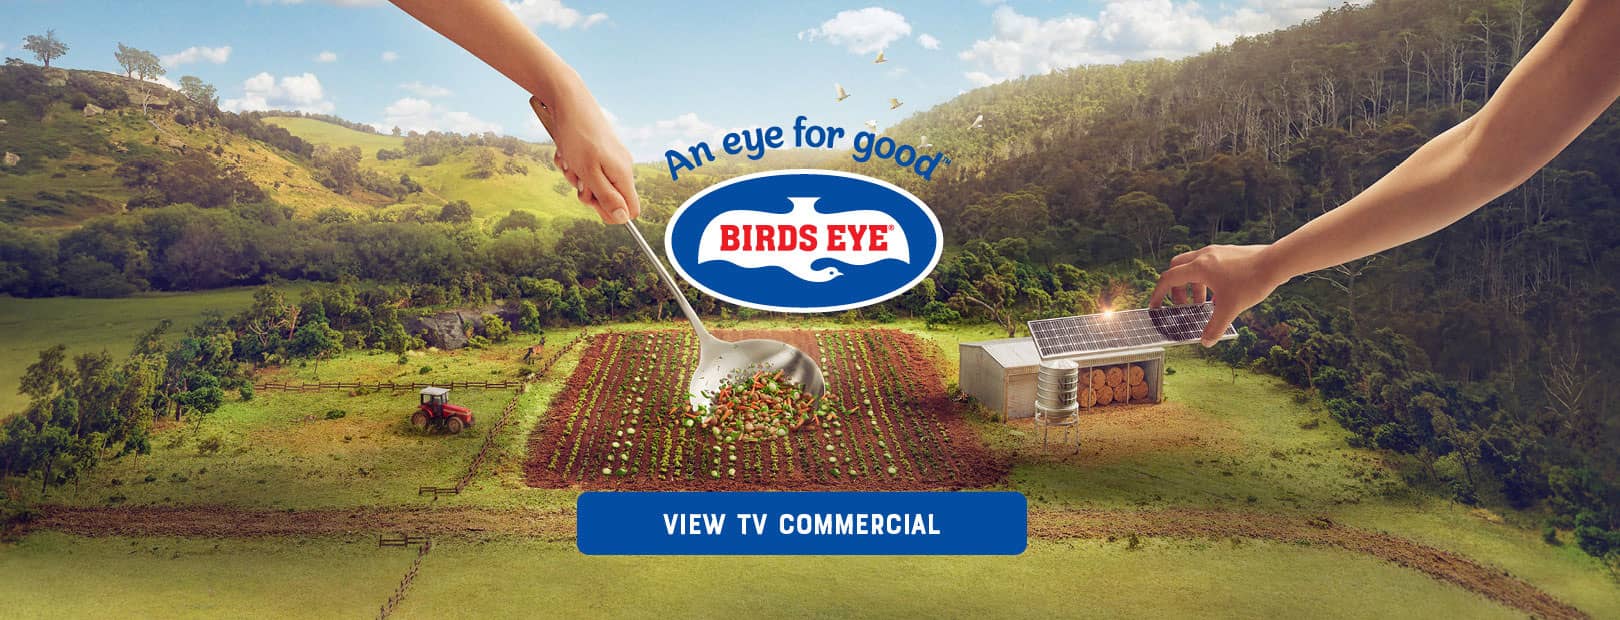 Birds Eye TV Commercial Teaser